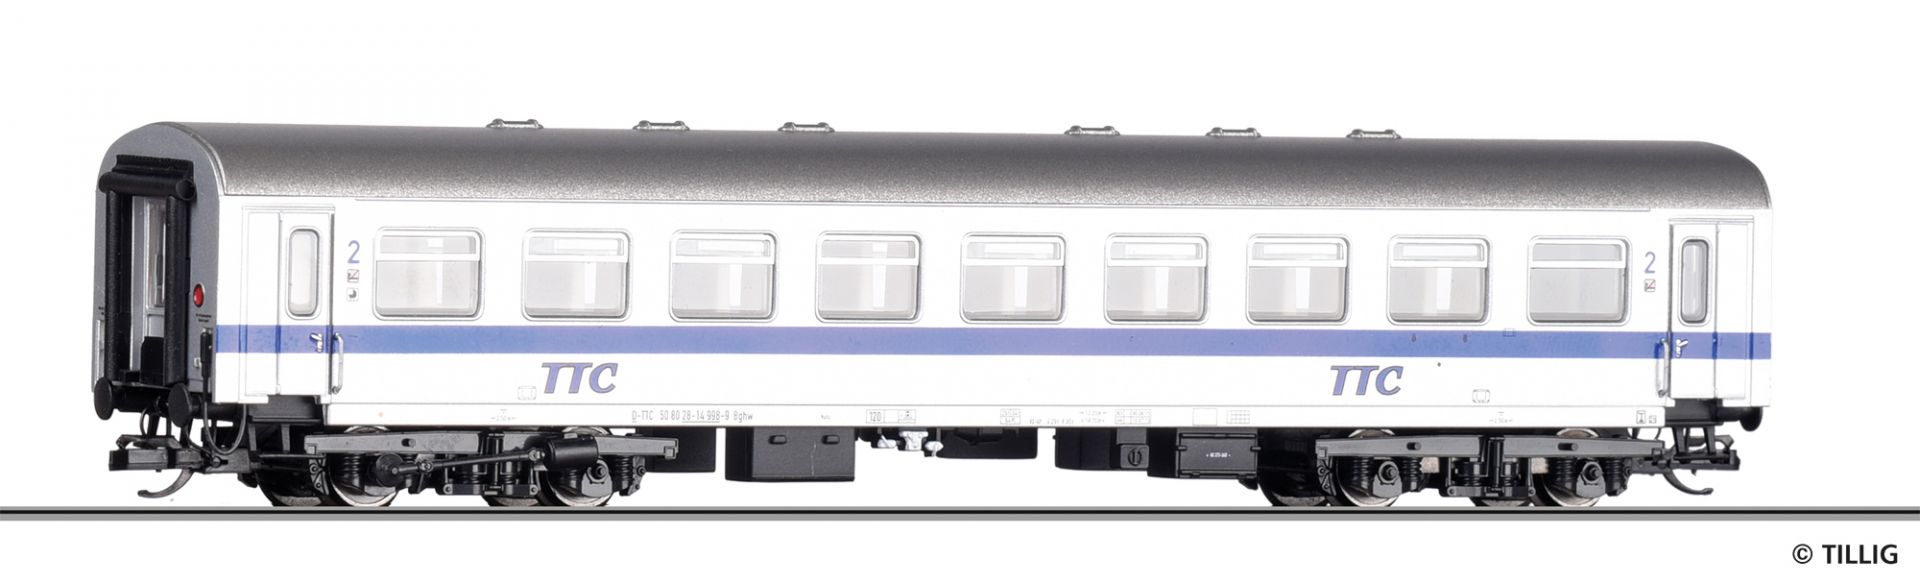 502409 | Reisezugwagen TTC